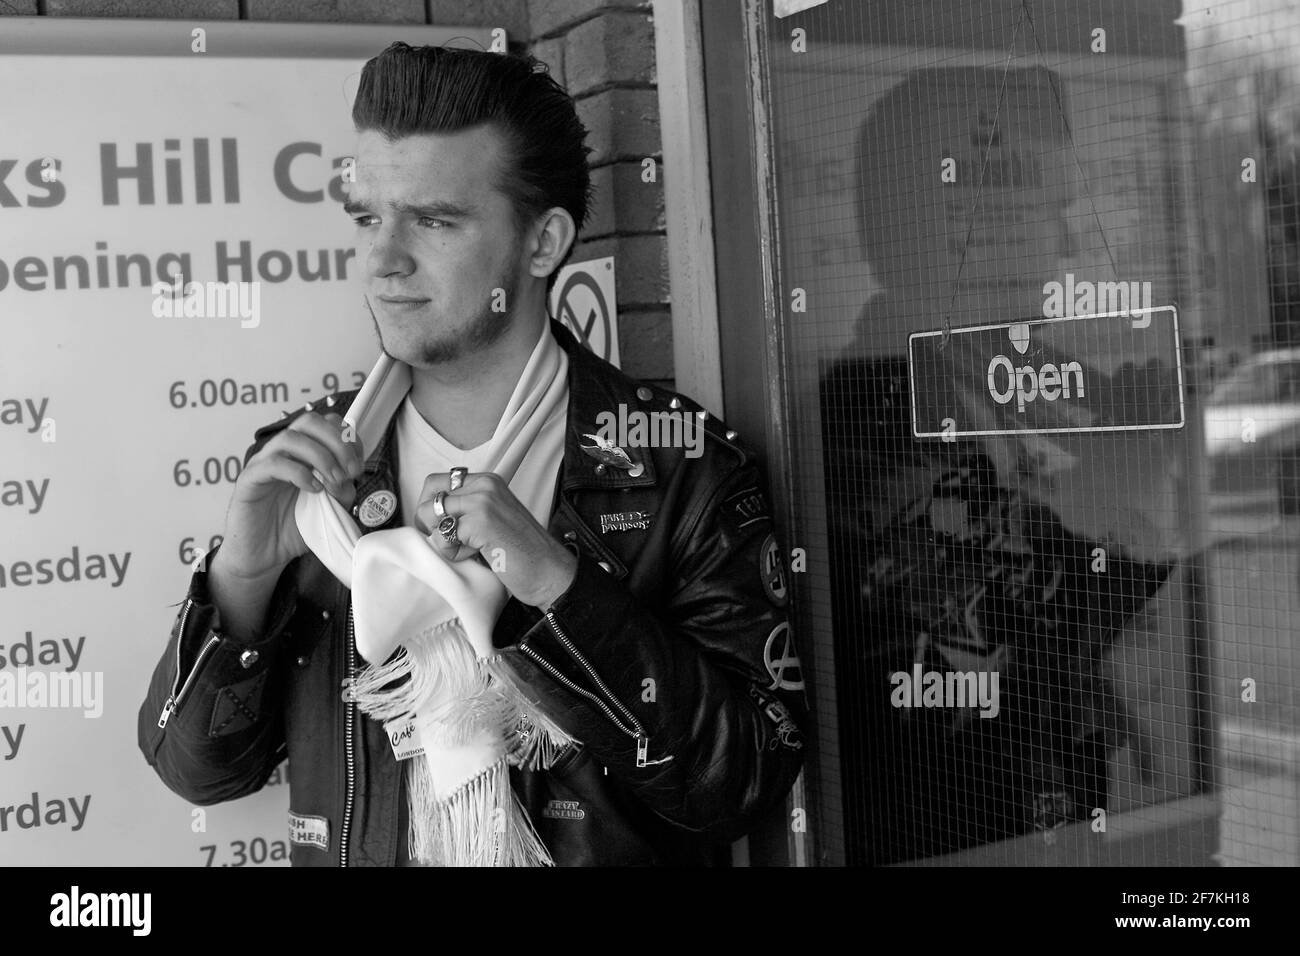 Jeune rocker avec une veste en cuir noir et une écharpe blanche à ton up Day, Jacks Hill Cafe, Towcester, Northamptonshire, Angleterre. Banque D'Images